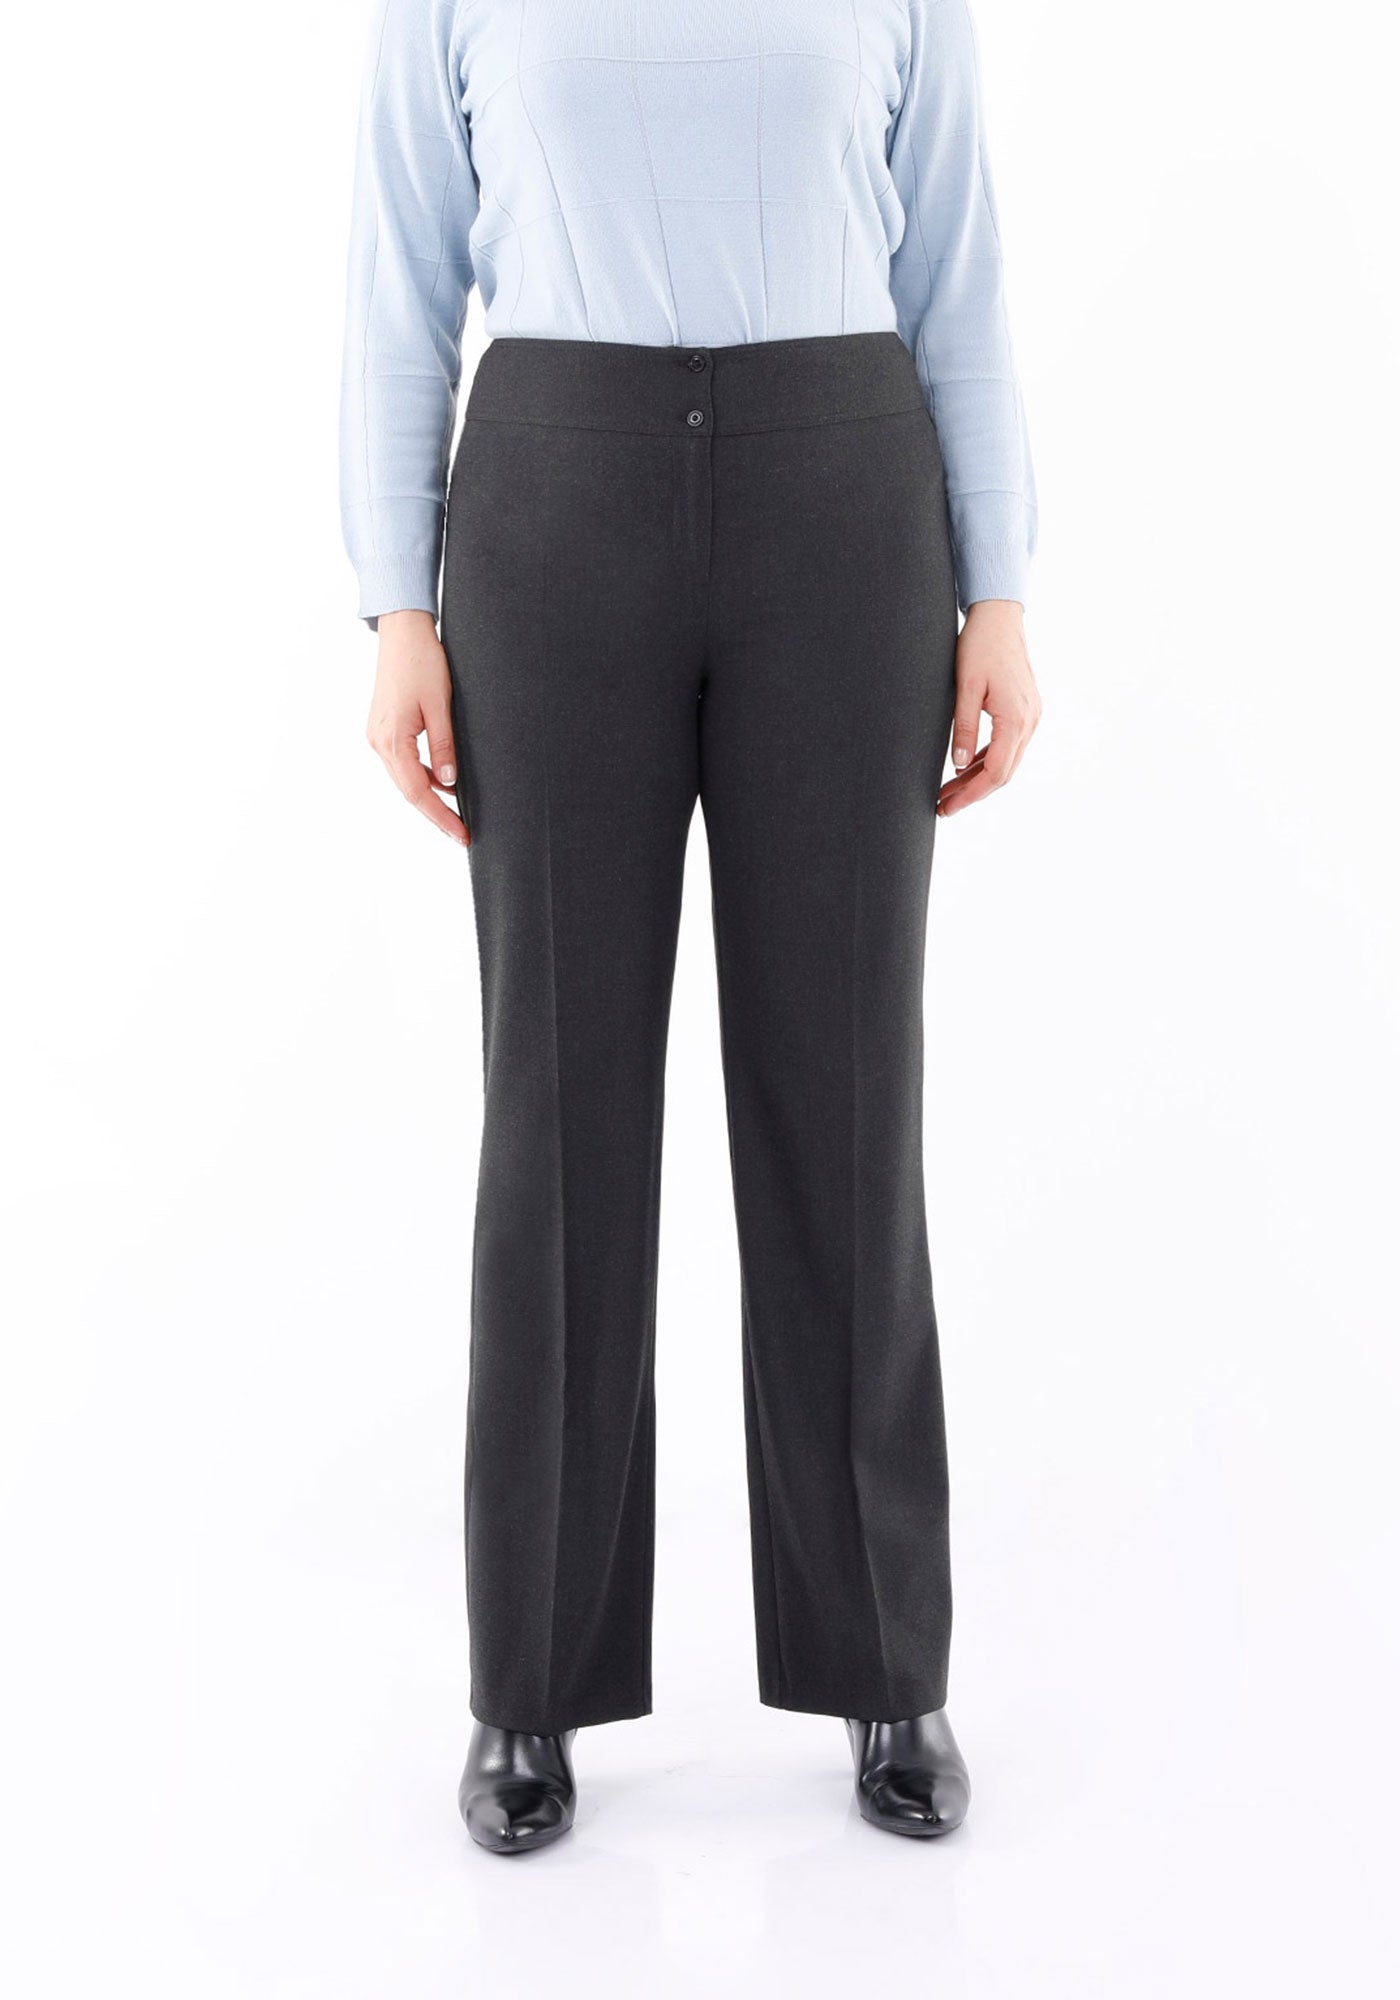 Las mejores ofertas en Pantalones de poliéster gris trajes y Conjuntos para  Mujeres